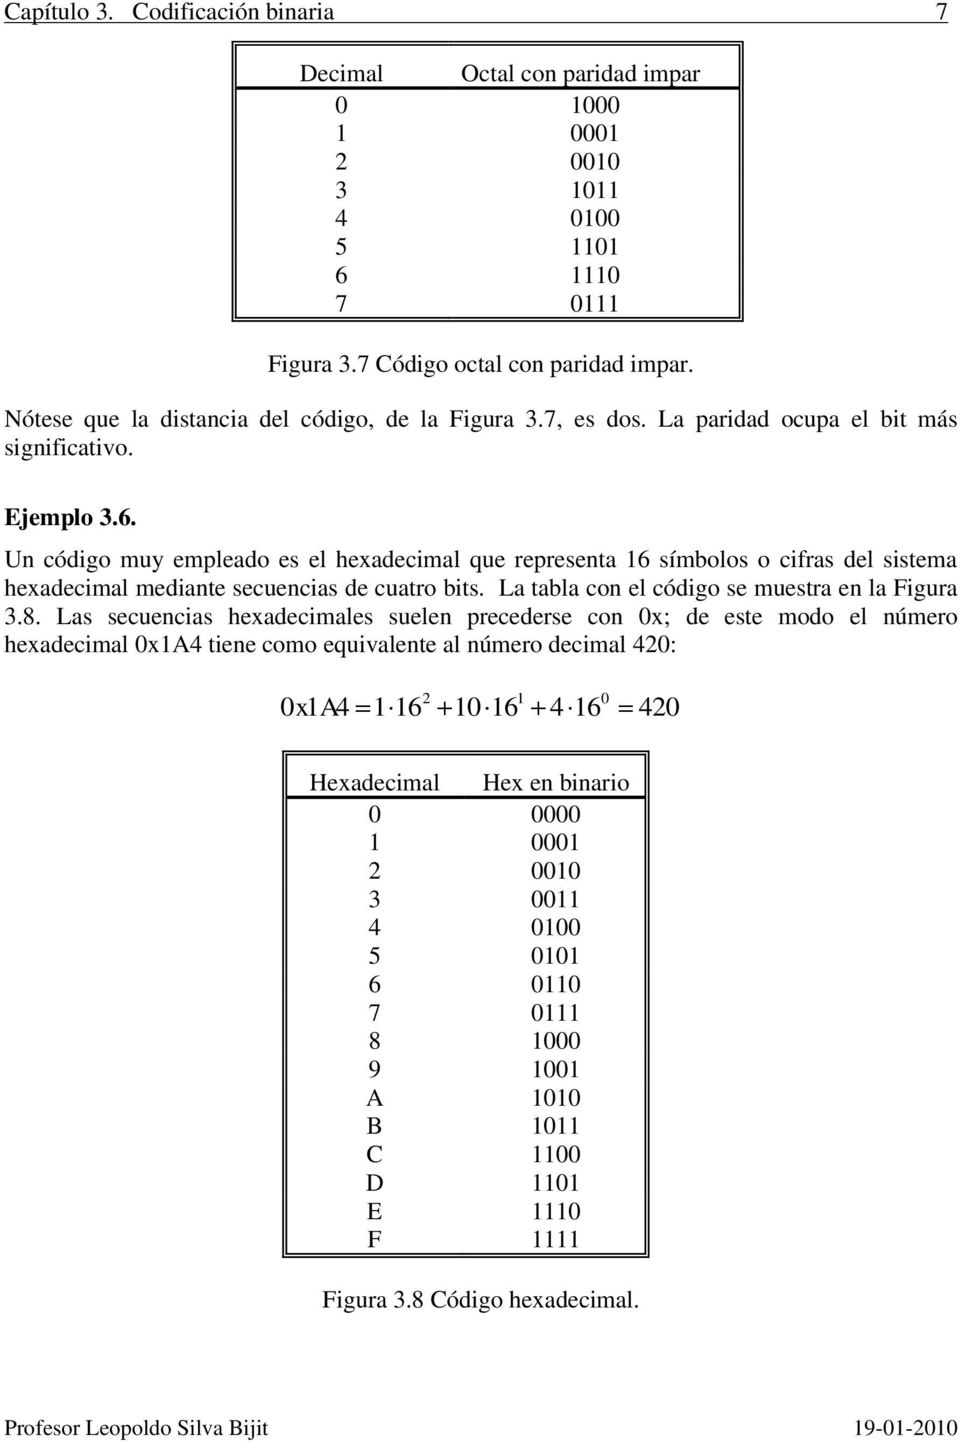 Un código muy empleado es el hexadecimal que representa 16 símbolos o cifras del sistema hexadecimal mediante secuencias de cuatro bits. La tabla con el código se muestra en la Figura 3.8.